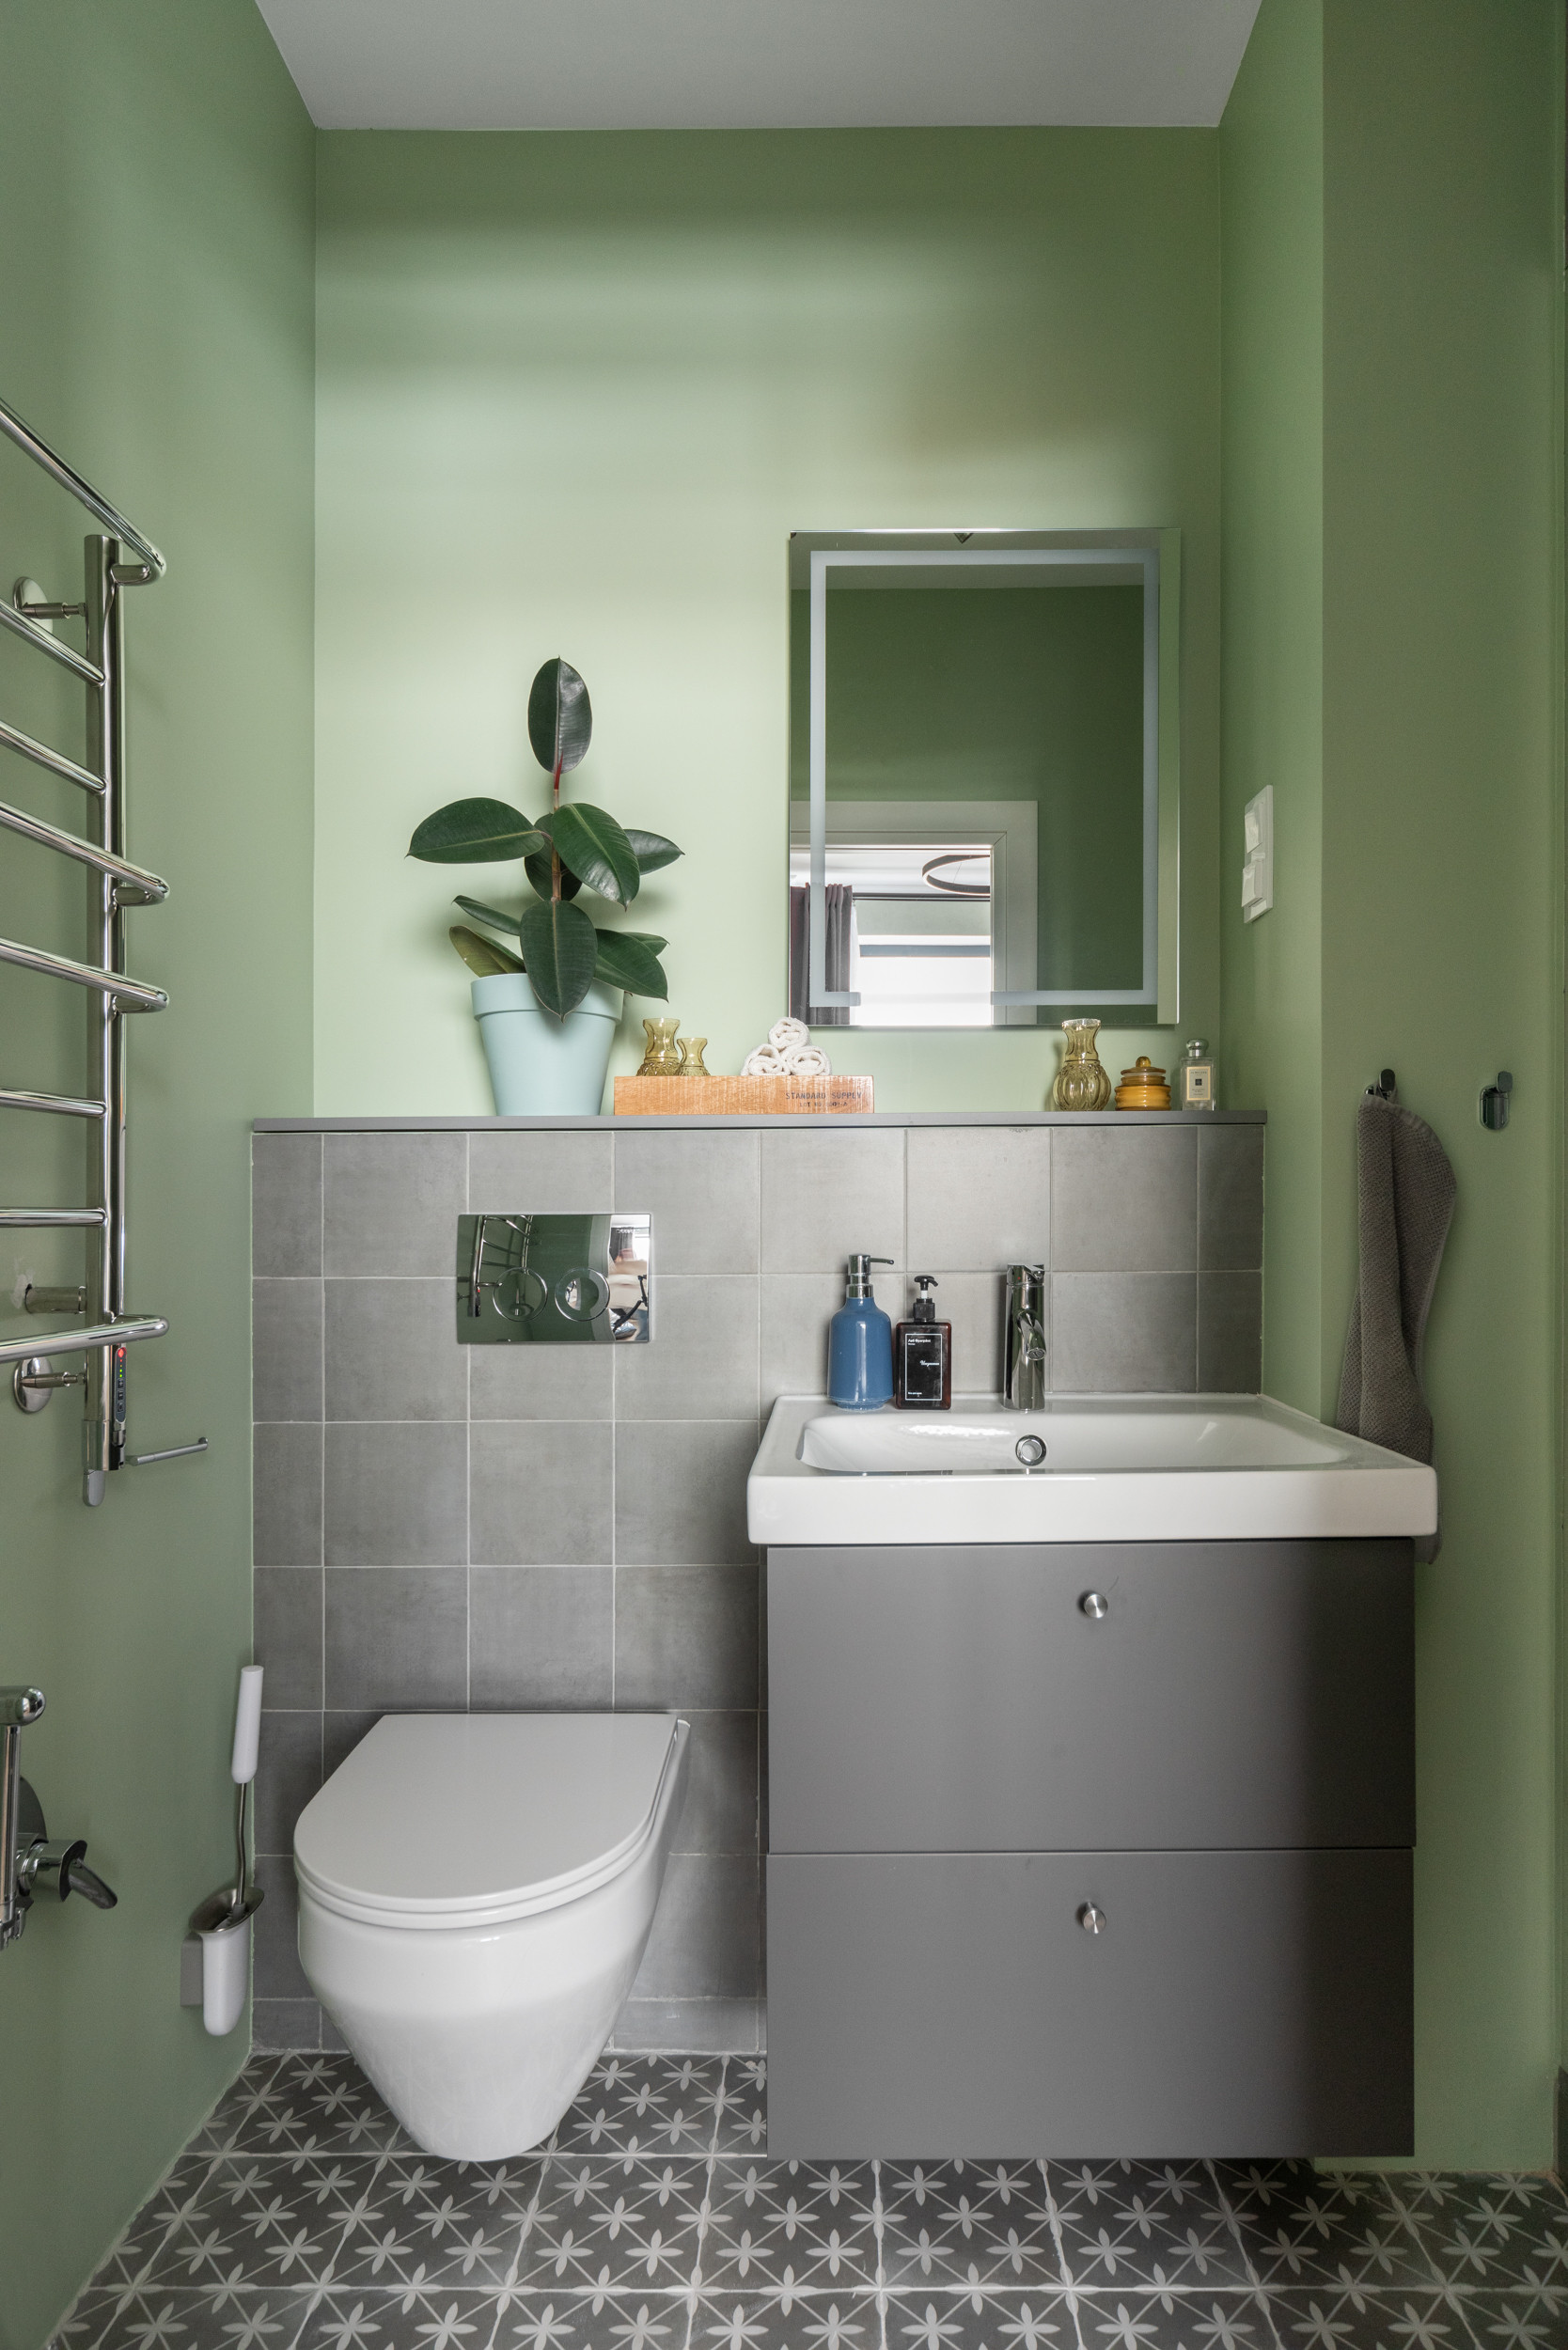 Ванная комната 2 кв. м. – маленькие секреты успешного дизайна | Онлайн-журнал о ремонте и дизайне